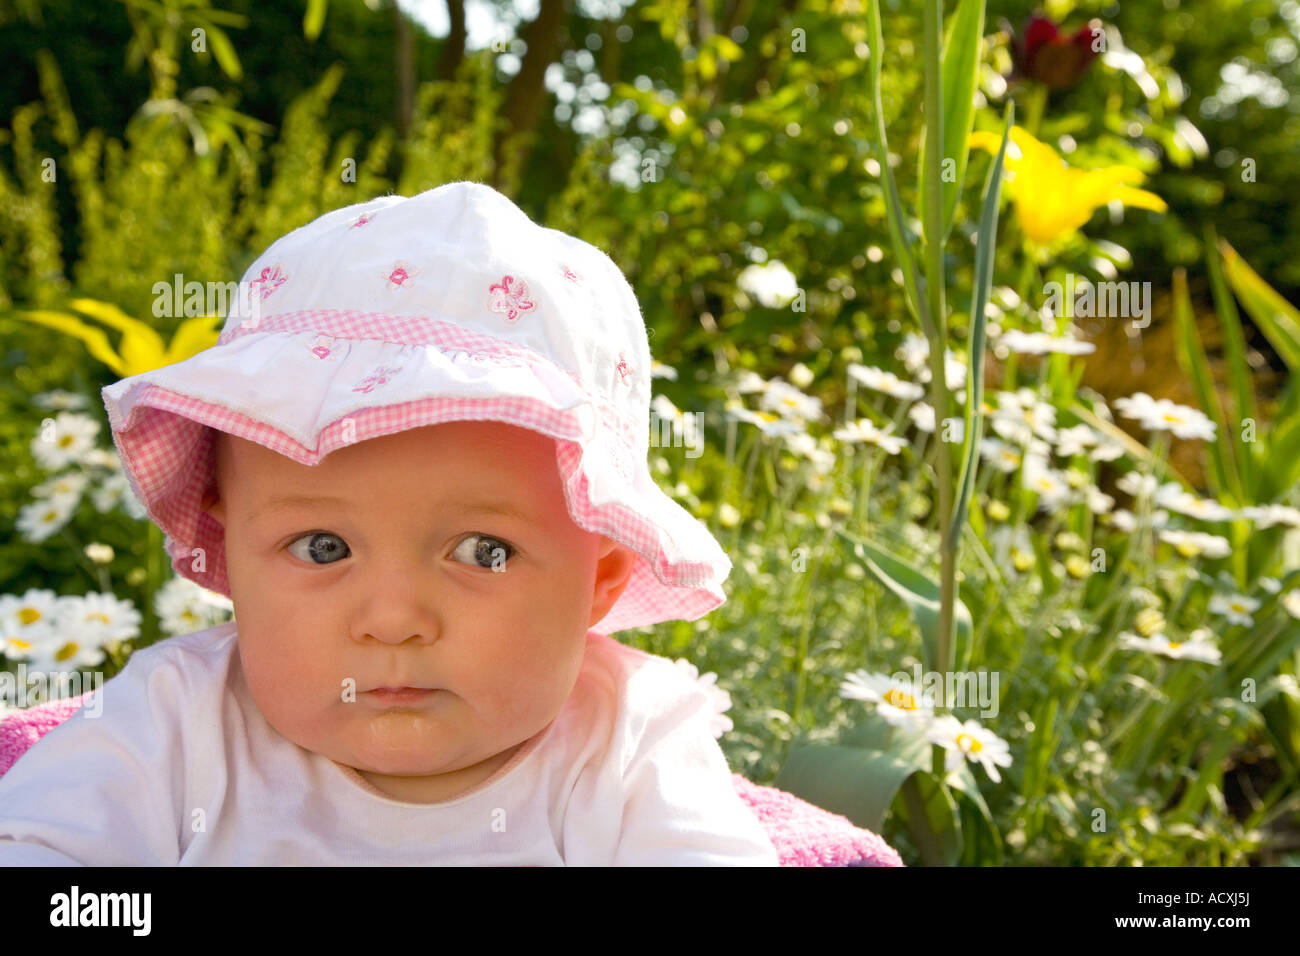 Bella 6 mese vecchia ragazza bambino neonato bimbo in rosa cappello hat nel sole nel giardino esterno all'aperto Foto Stock